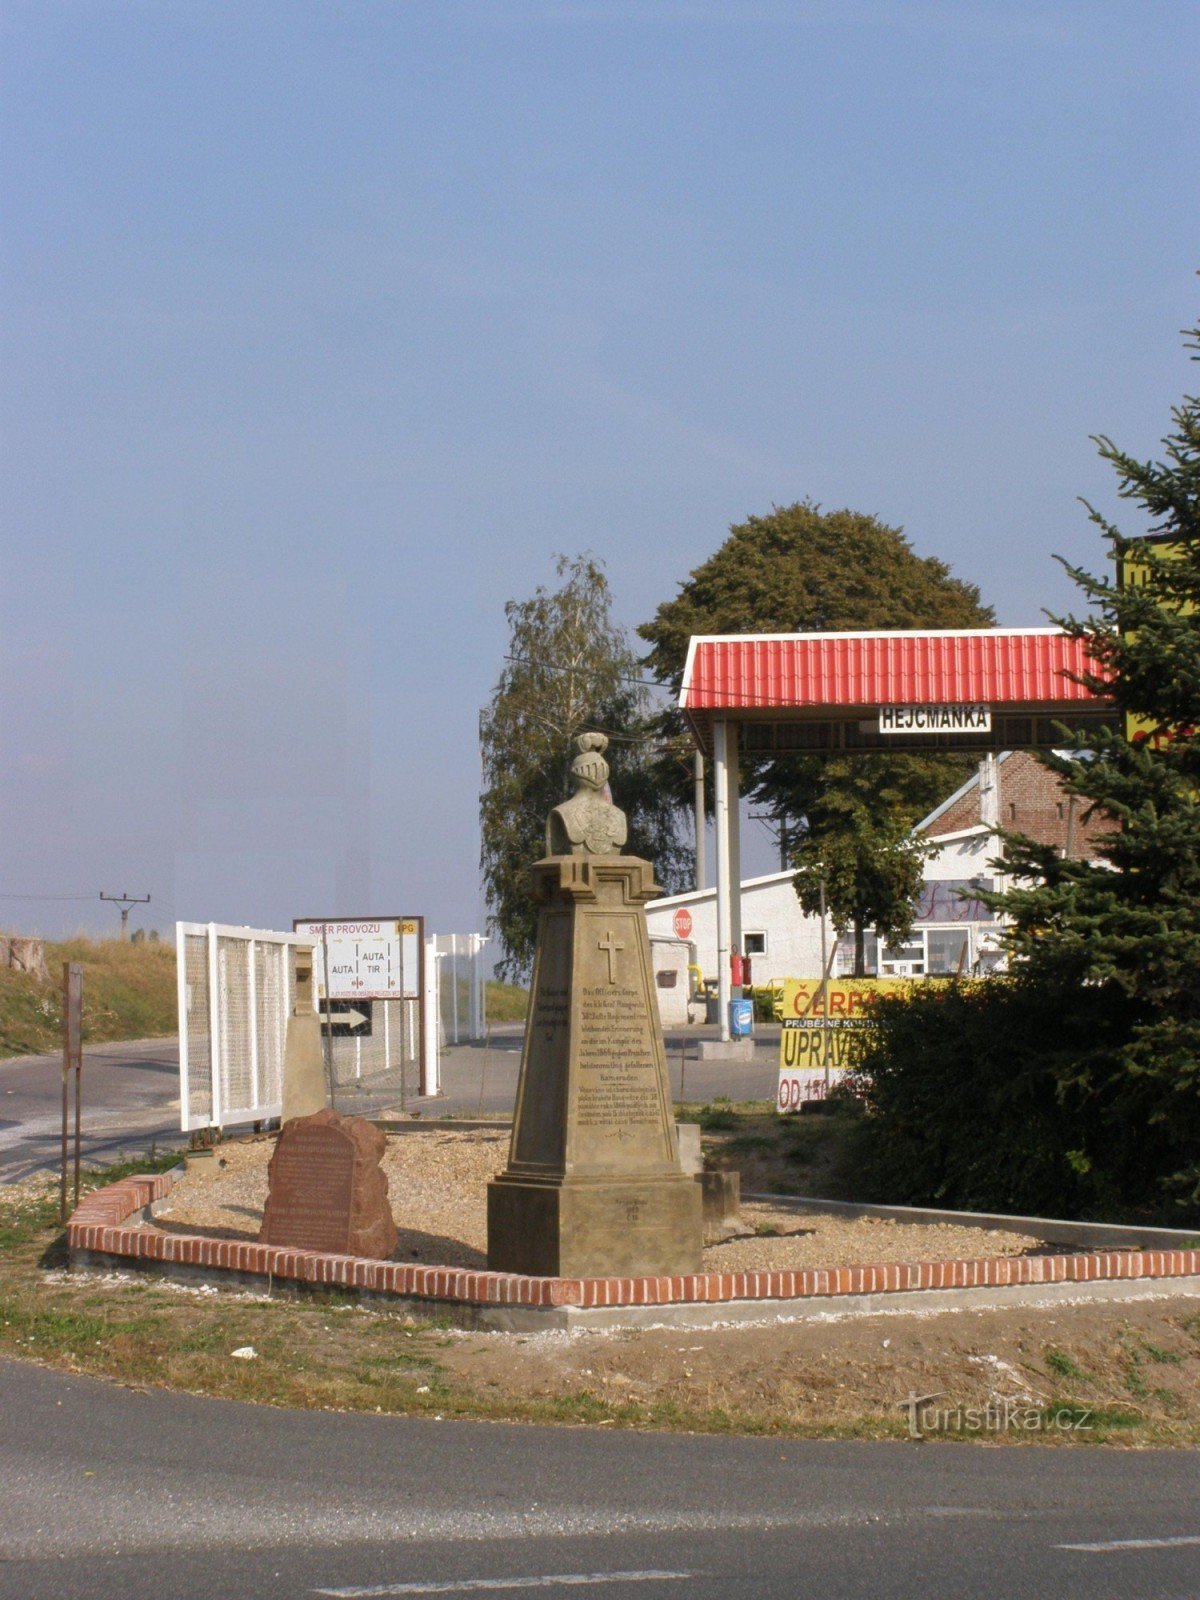 Rózběřice - Hejcmanka - monumenten van de slag van 1866